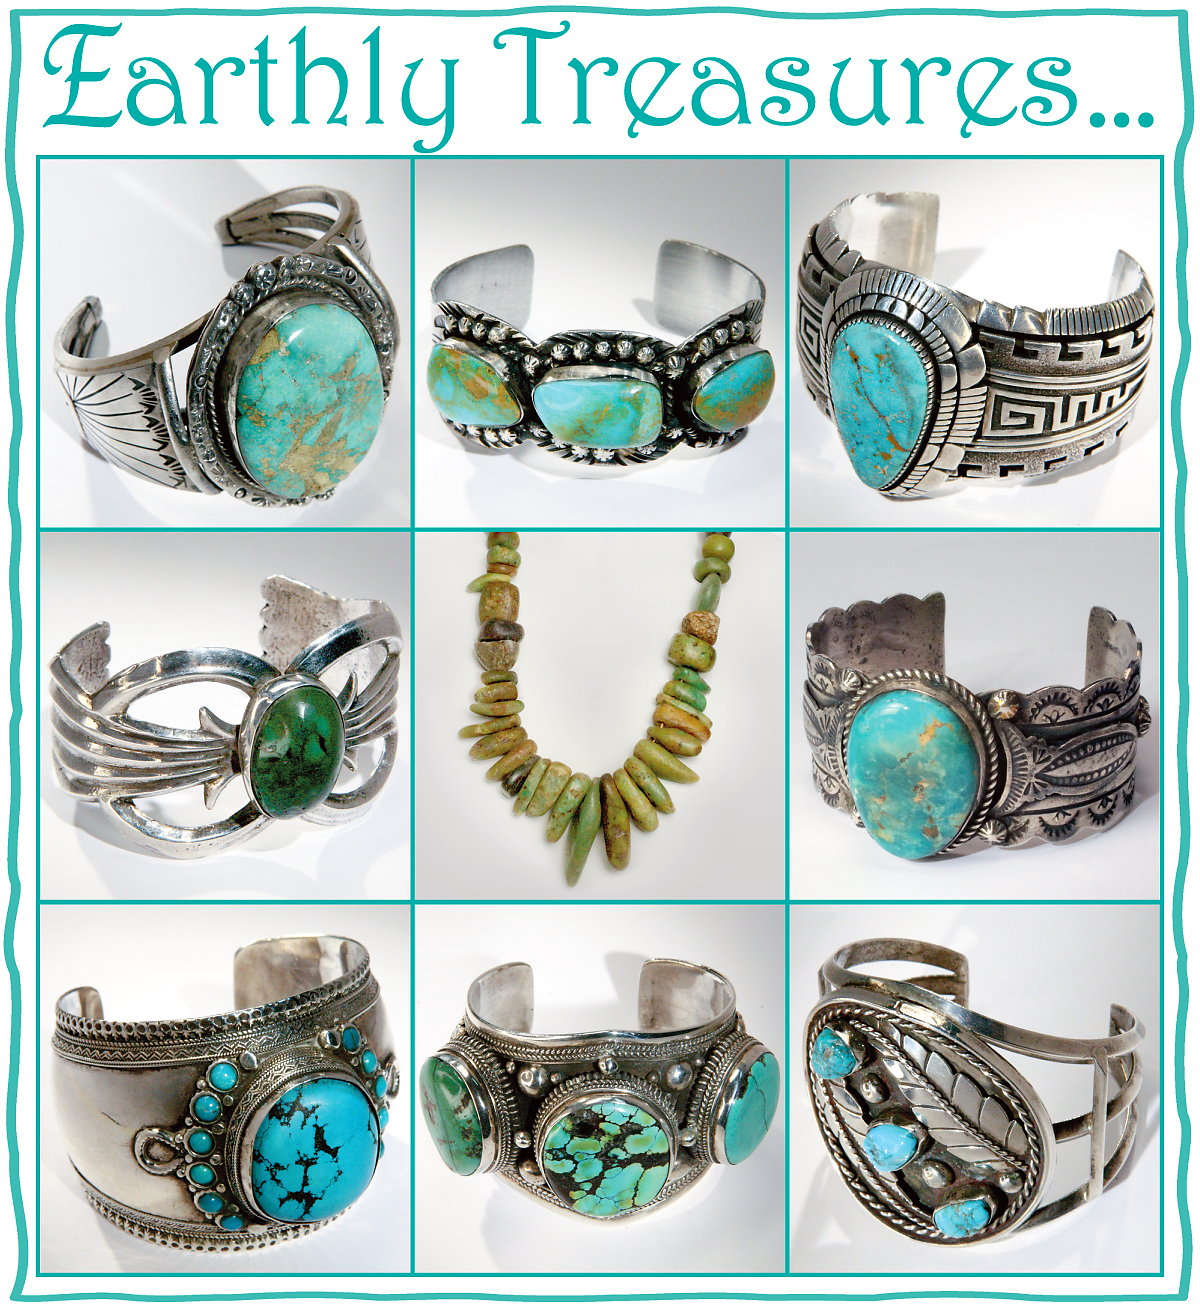 Earthly Treasures...